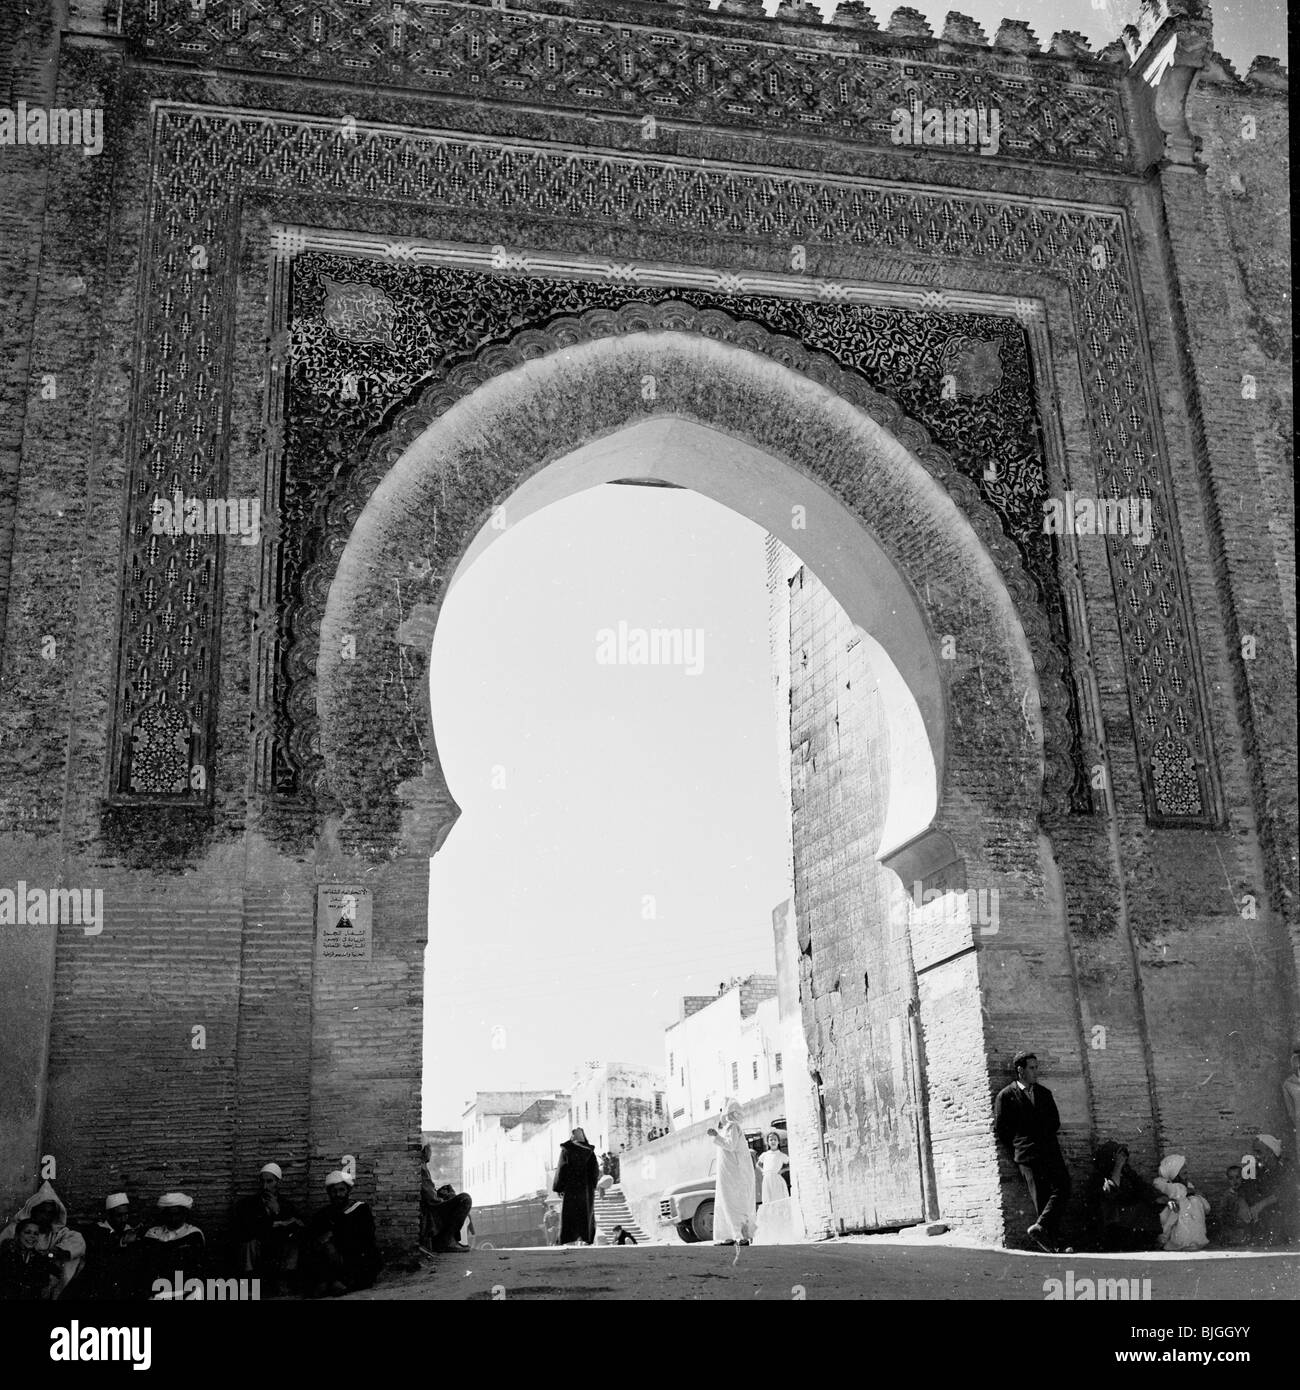 der 1950er Jahre in dieses Geschichtsbild durch J Allan Cash sehen wir eine riesige dekorative Torbogen oder Eingang in eine Stadt, Marokko. Stockfoto